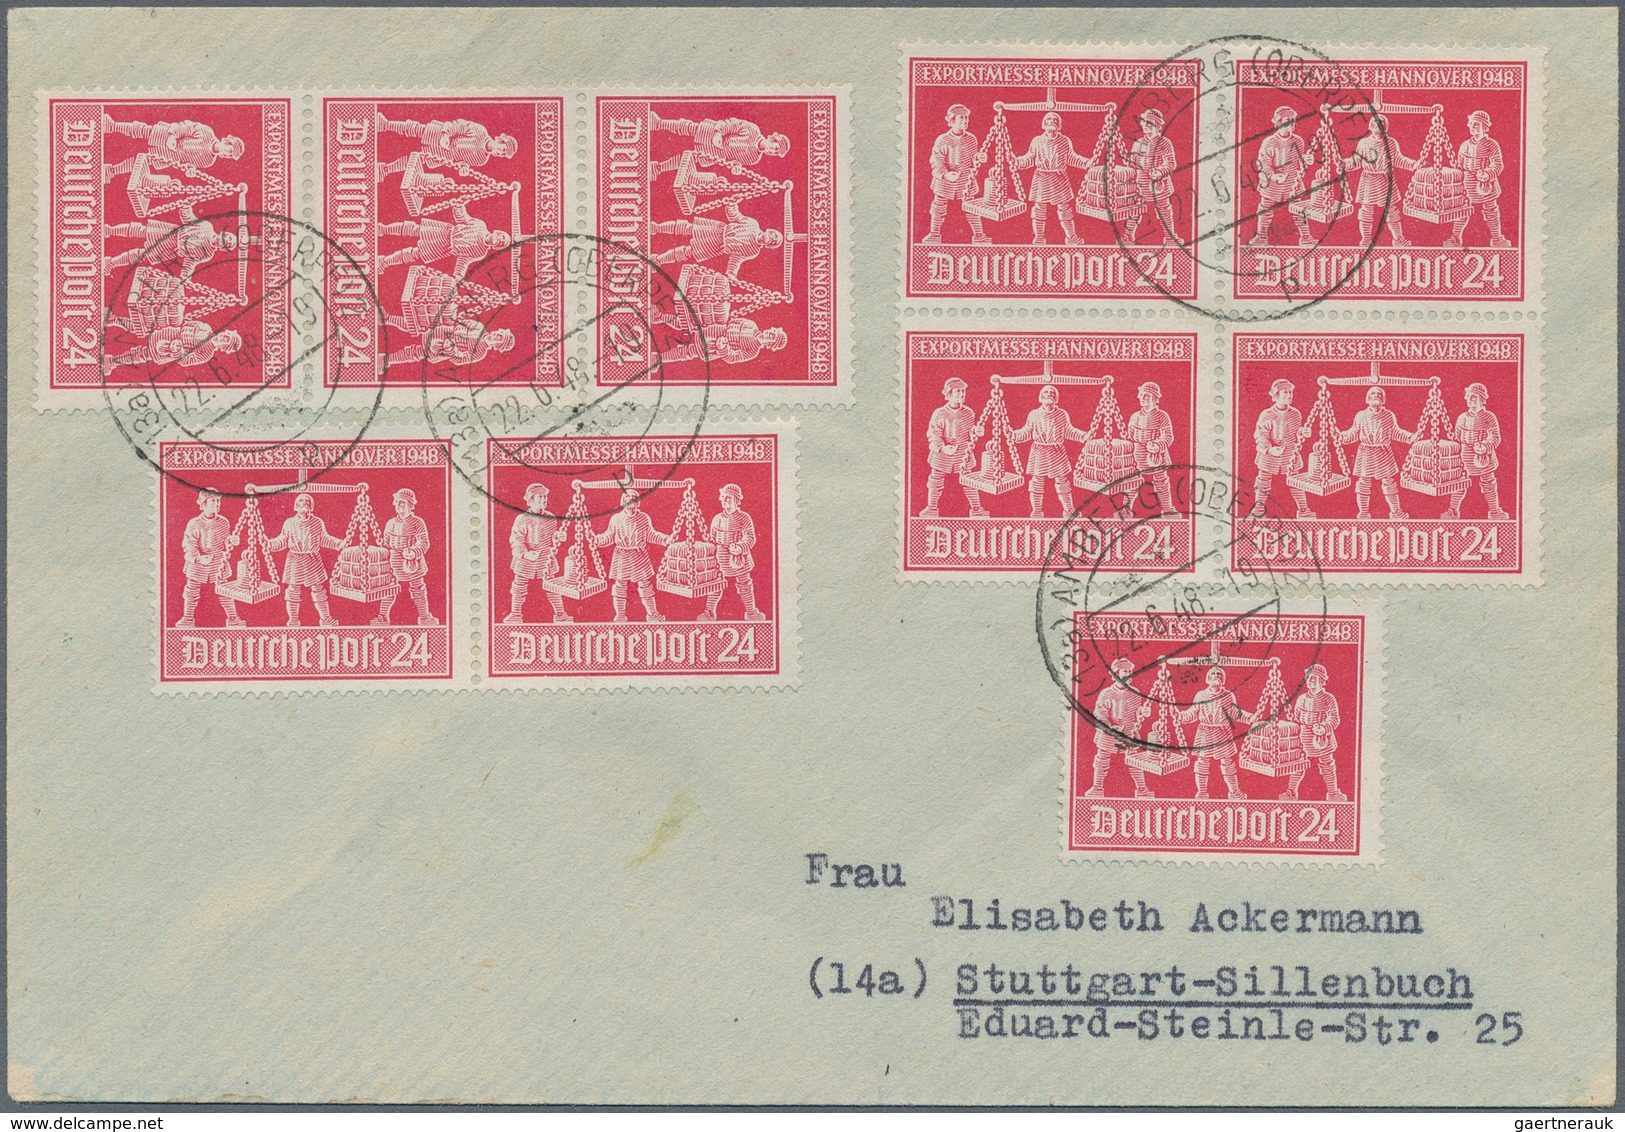 Alliierte Besetzung - Gemeinschaftsausgaben: 1948, ZEHNFACH, vielseitige Partie von ca. 110 Briefen